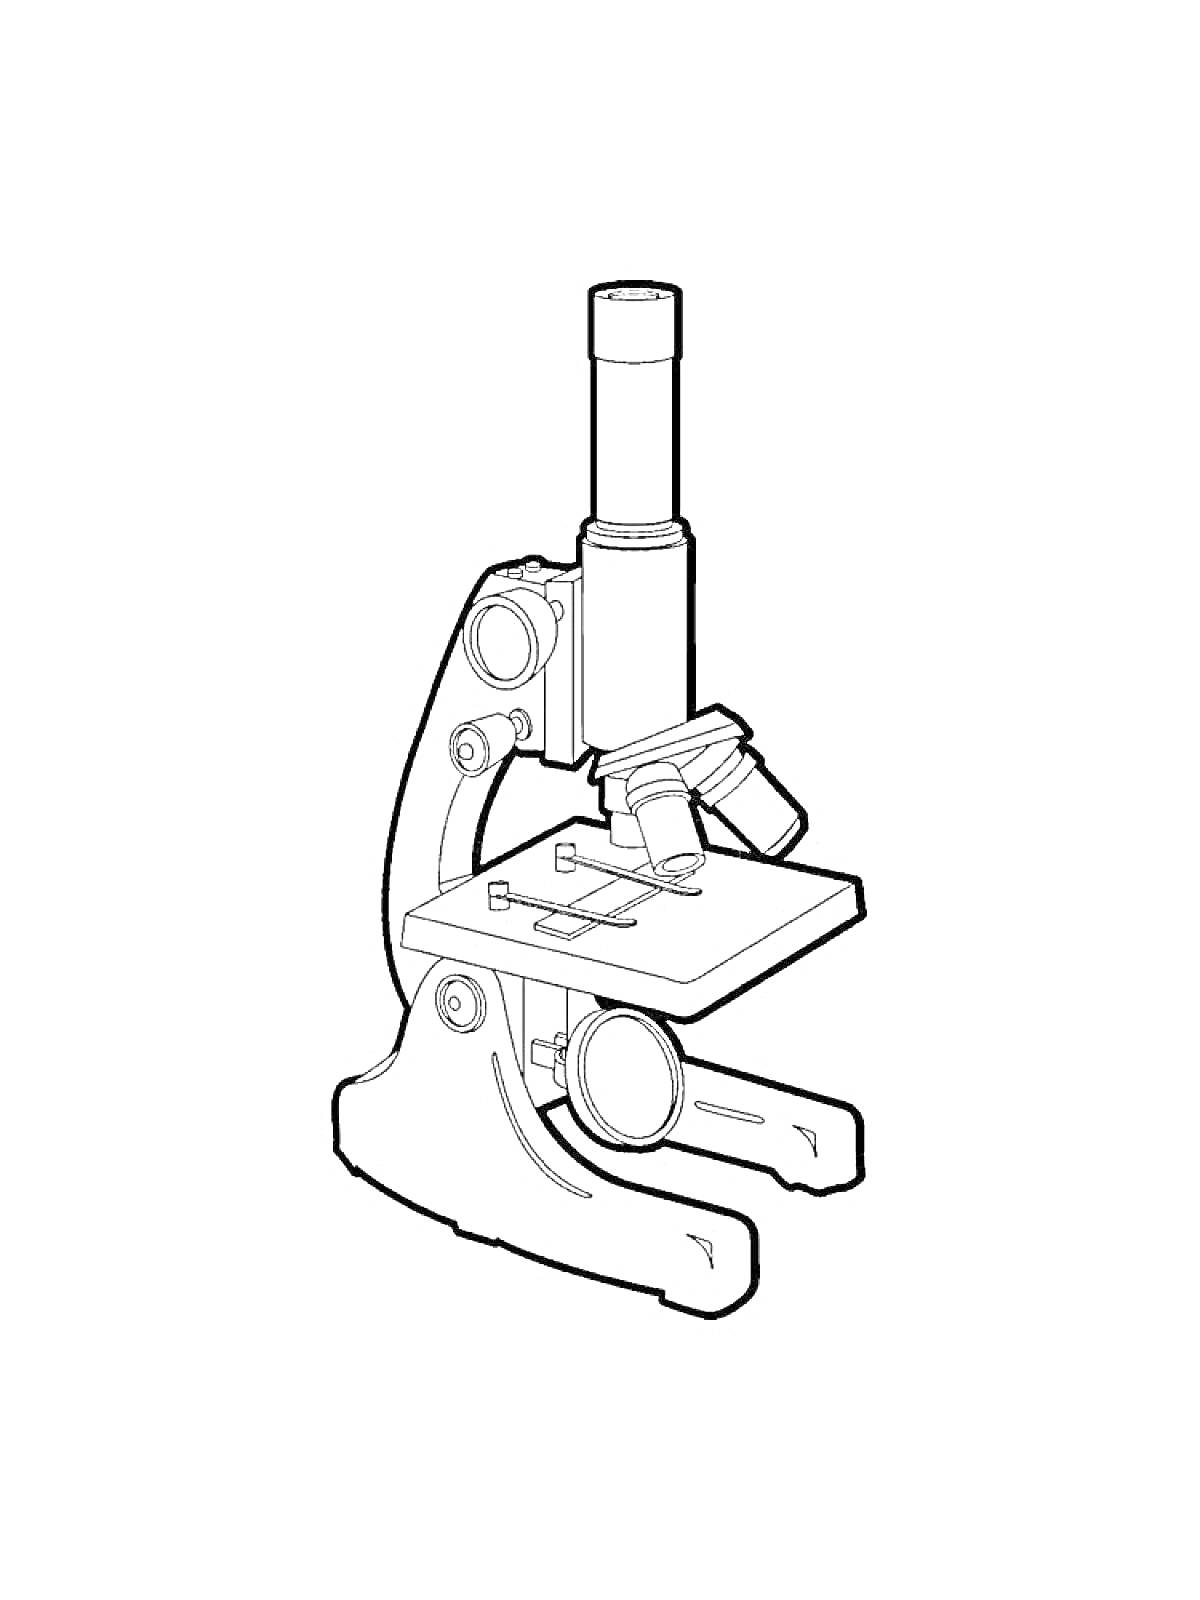 Микроскоп с объективами, окуляром, тубусом, фокусировочными ручками и предметным столиком